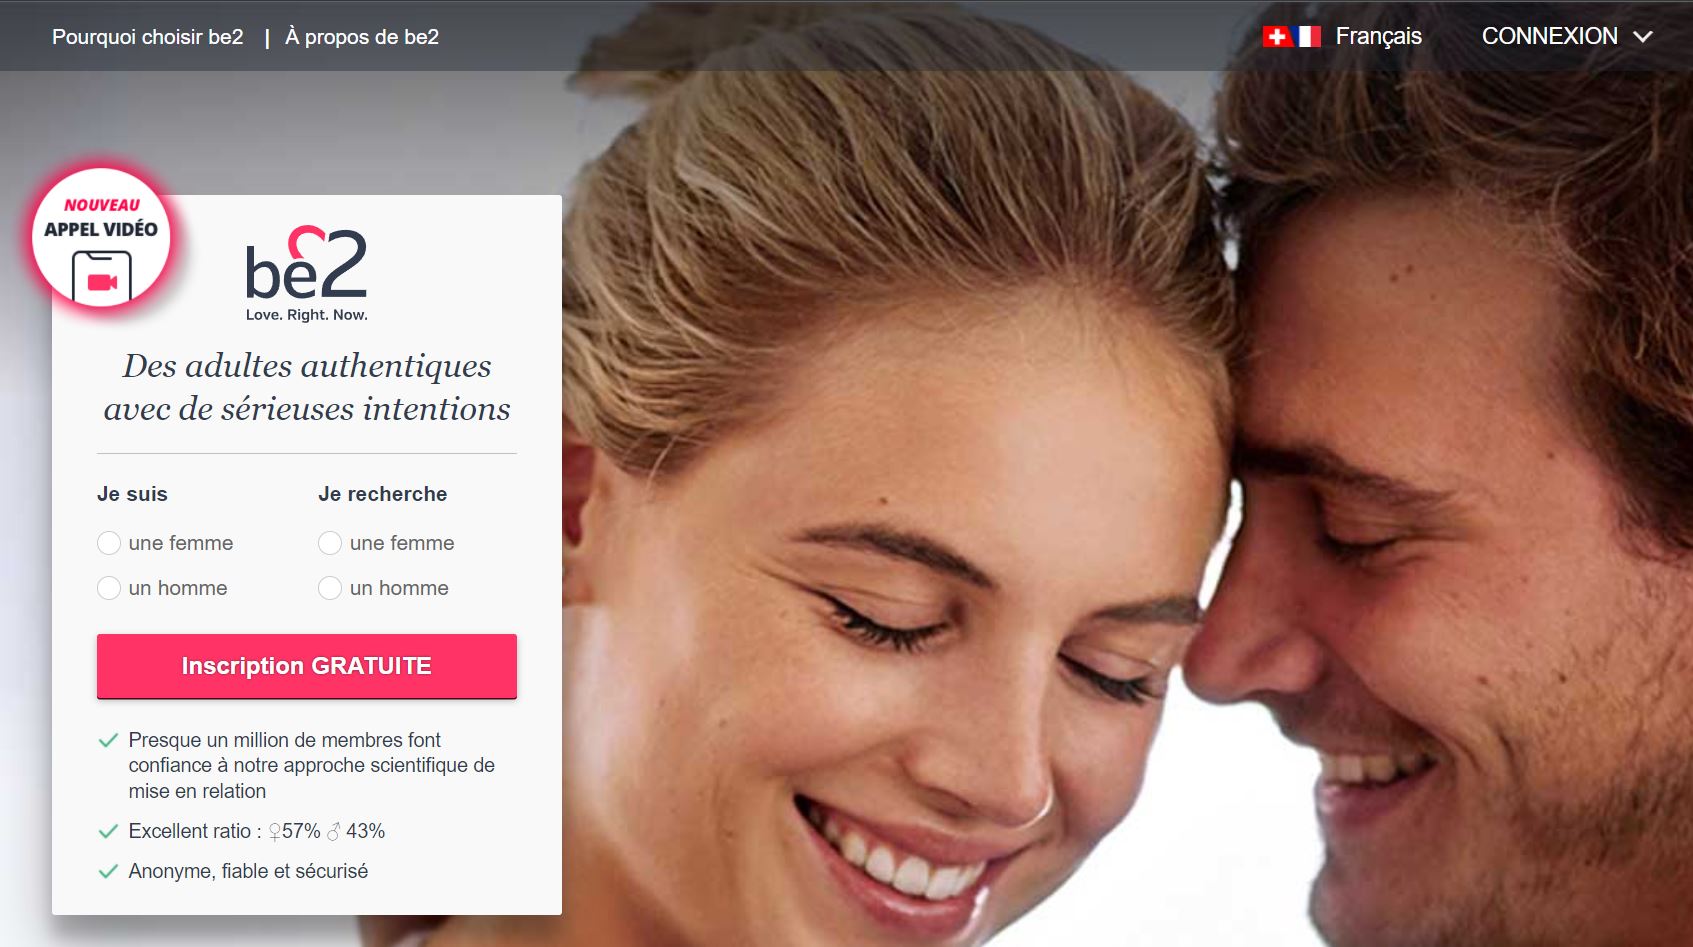 site de rencontre amoureuse gratuit en suisse